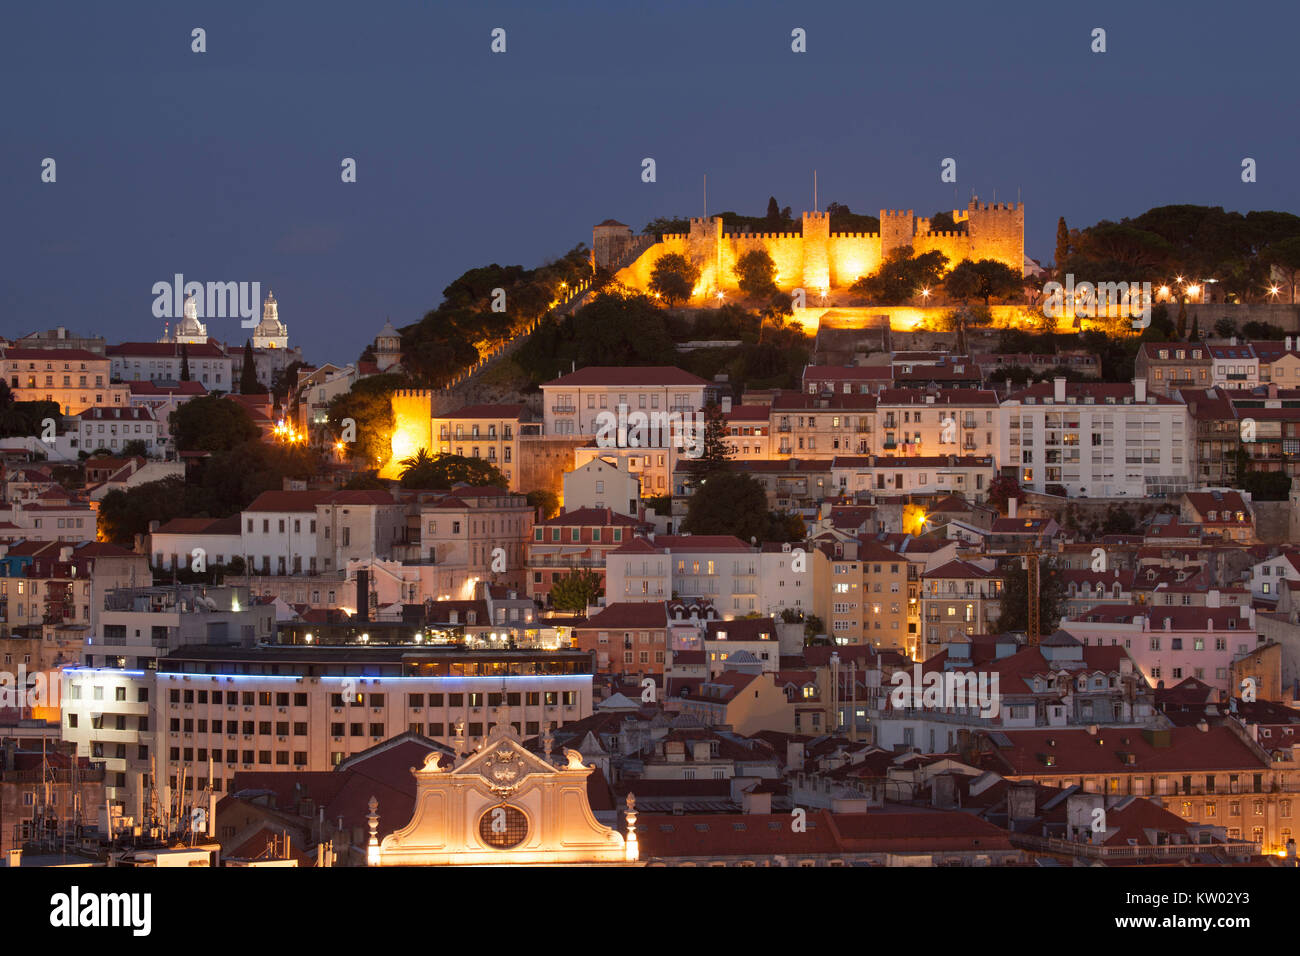 Die Burg von St George (Castelo de São Jorge) in Lissabon, Portugal. Die hilltop Festung stammt aus dem Mittelalter und ist nachts beleuchtet. Stockfoto